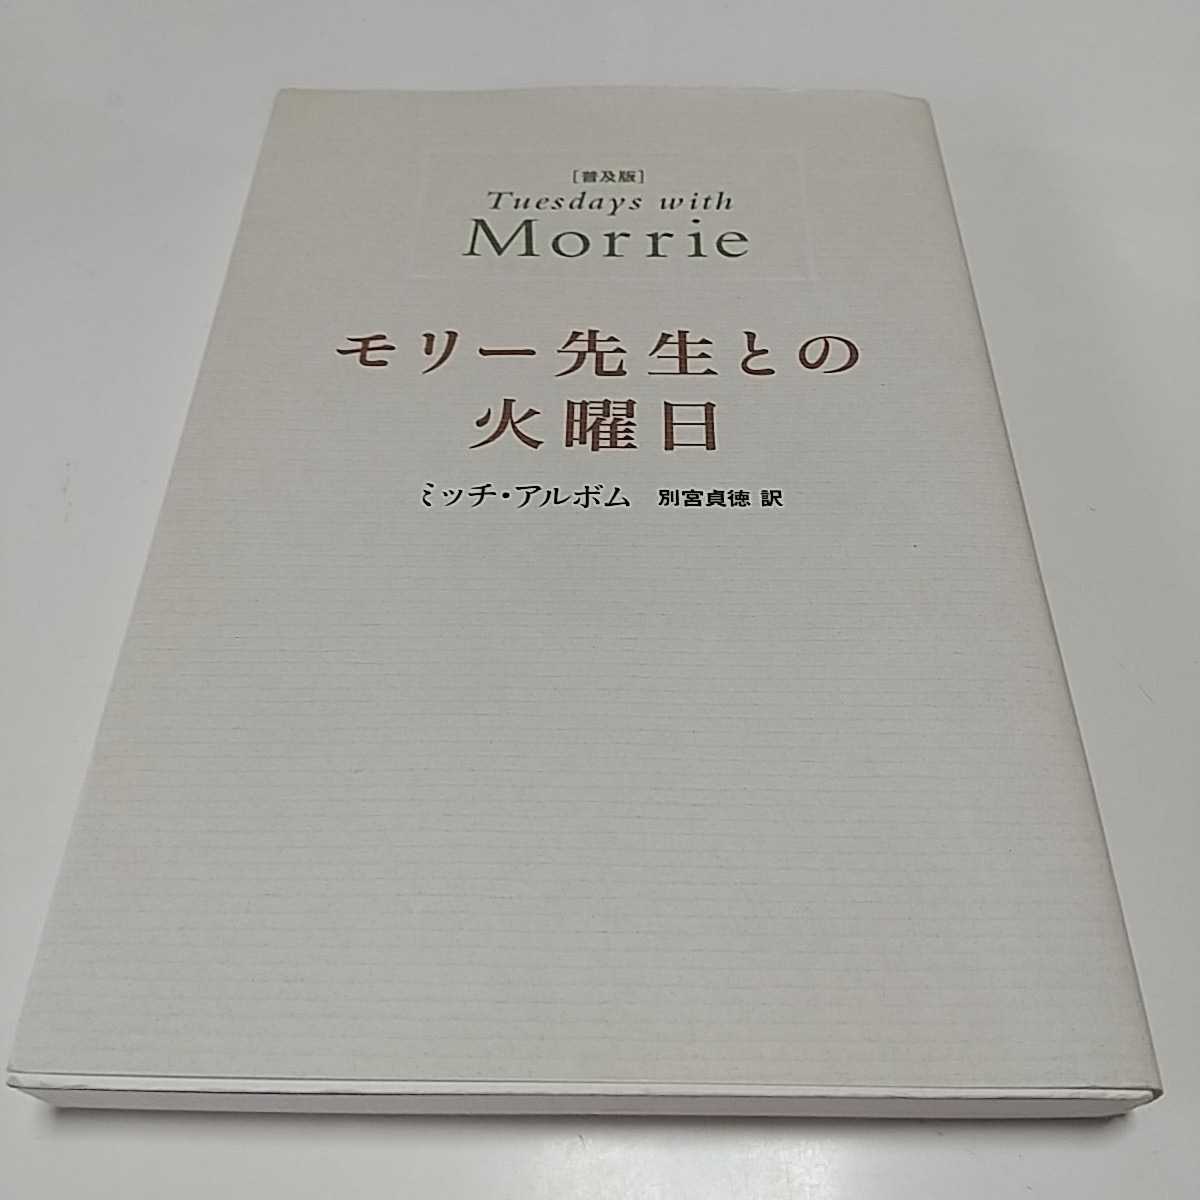 モリー先生との火曜日 DVD - 洋画・外国映画